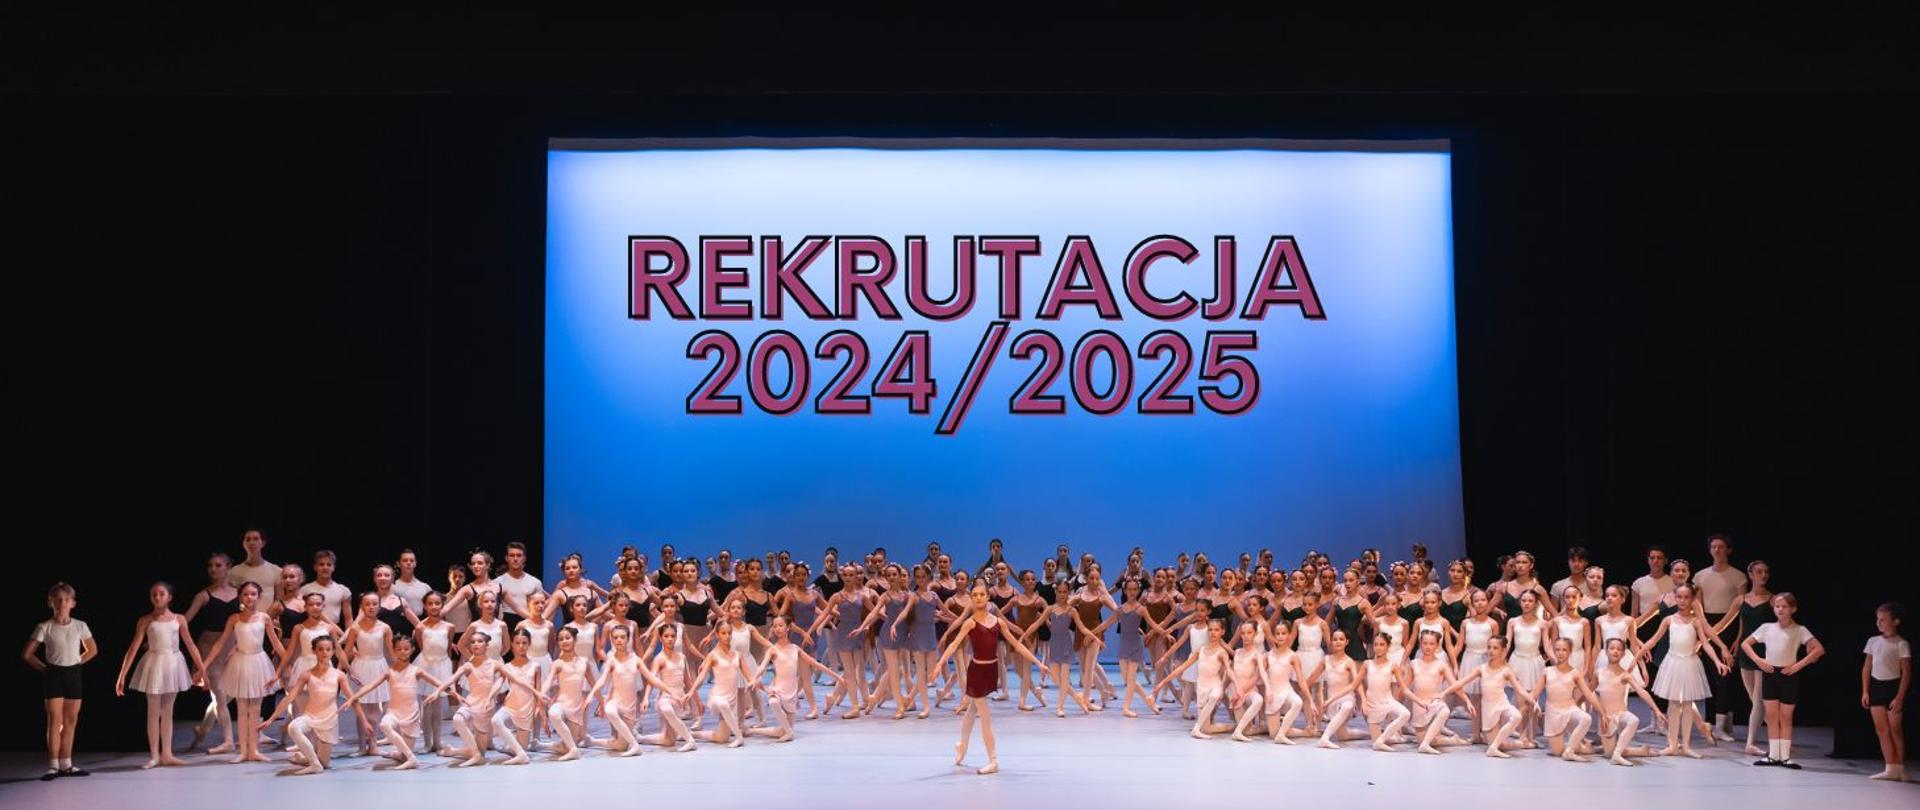 Zdjęcie z koncertu szkolnego w Teatrze Wielkim - Operze Narodowej z napisem "Rekrutacja 2024/2025"